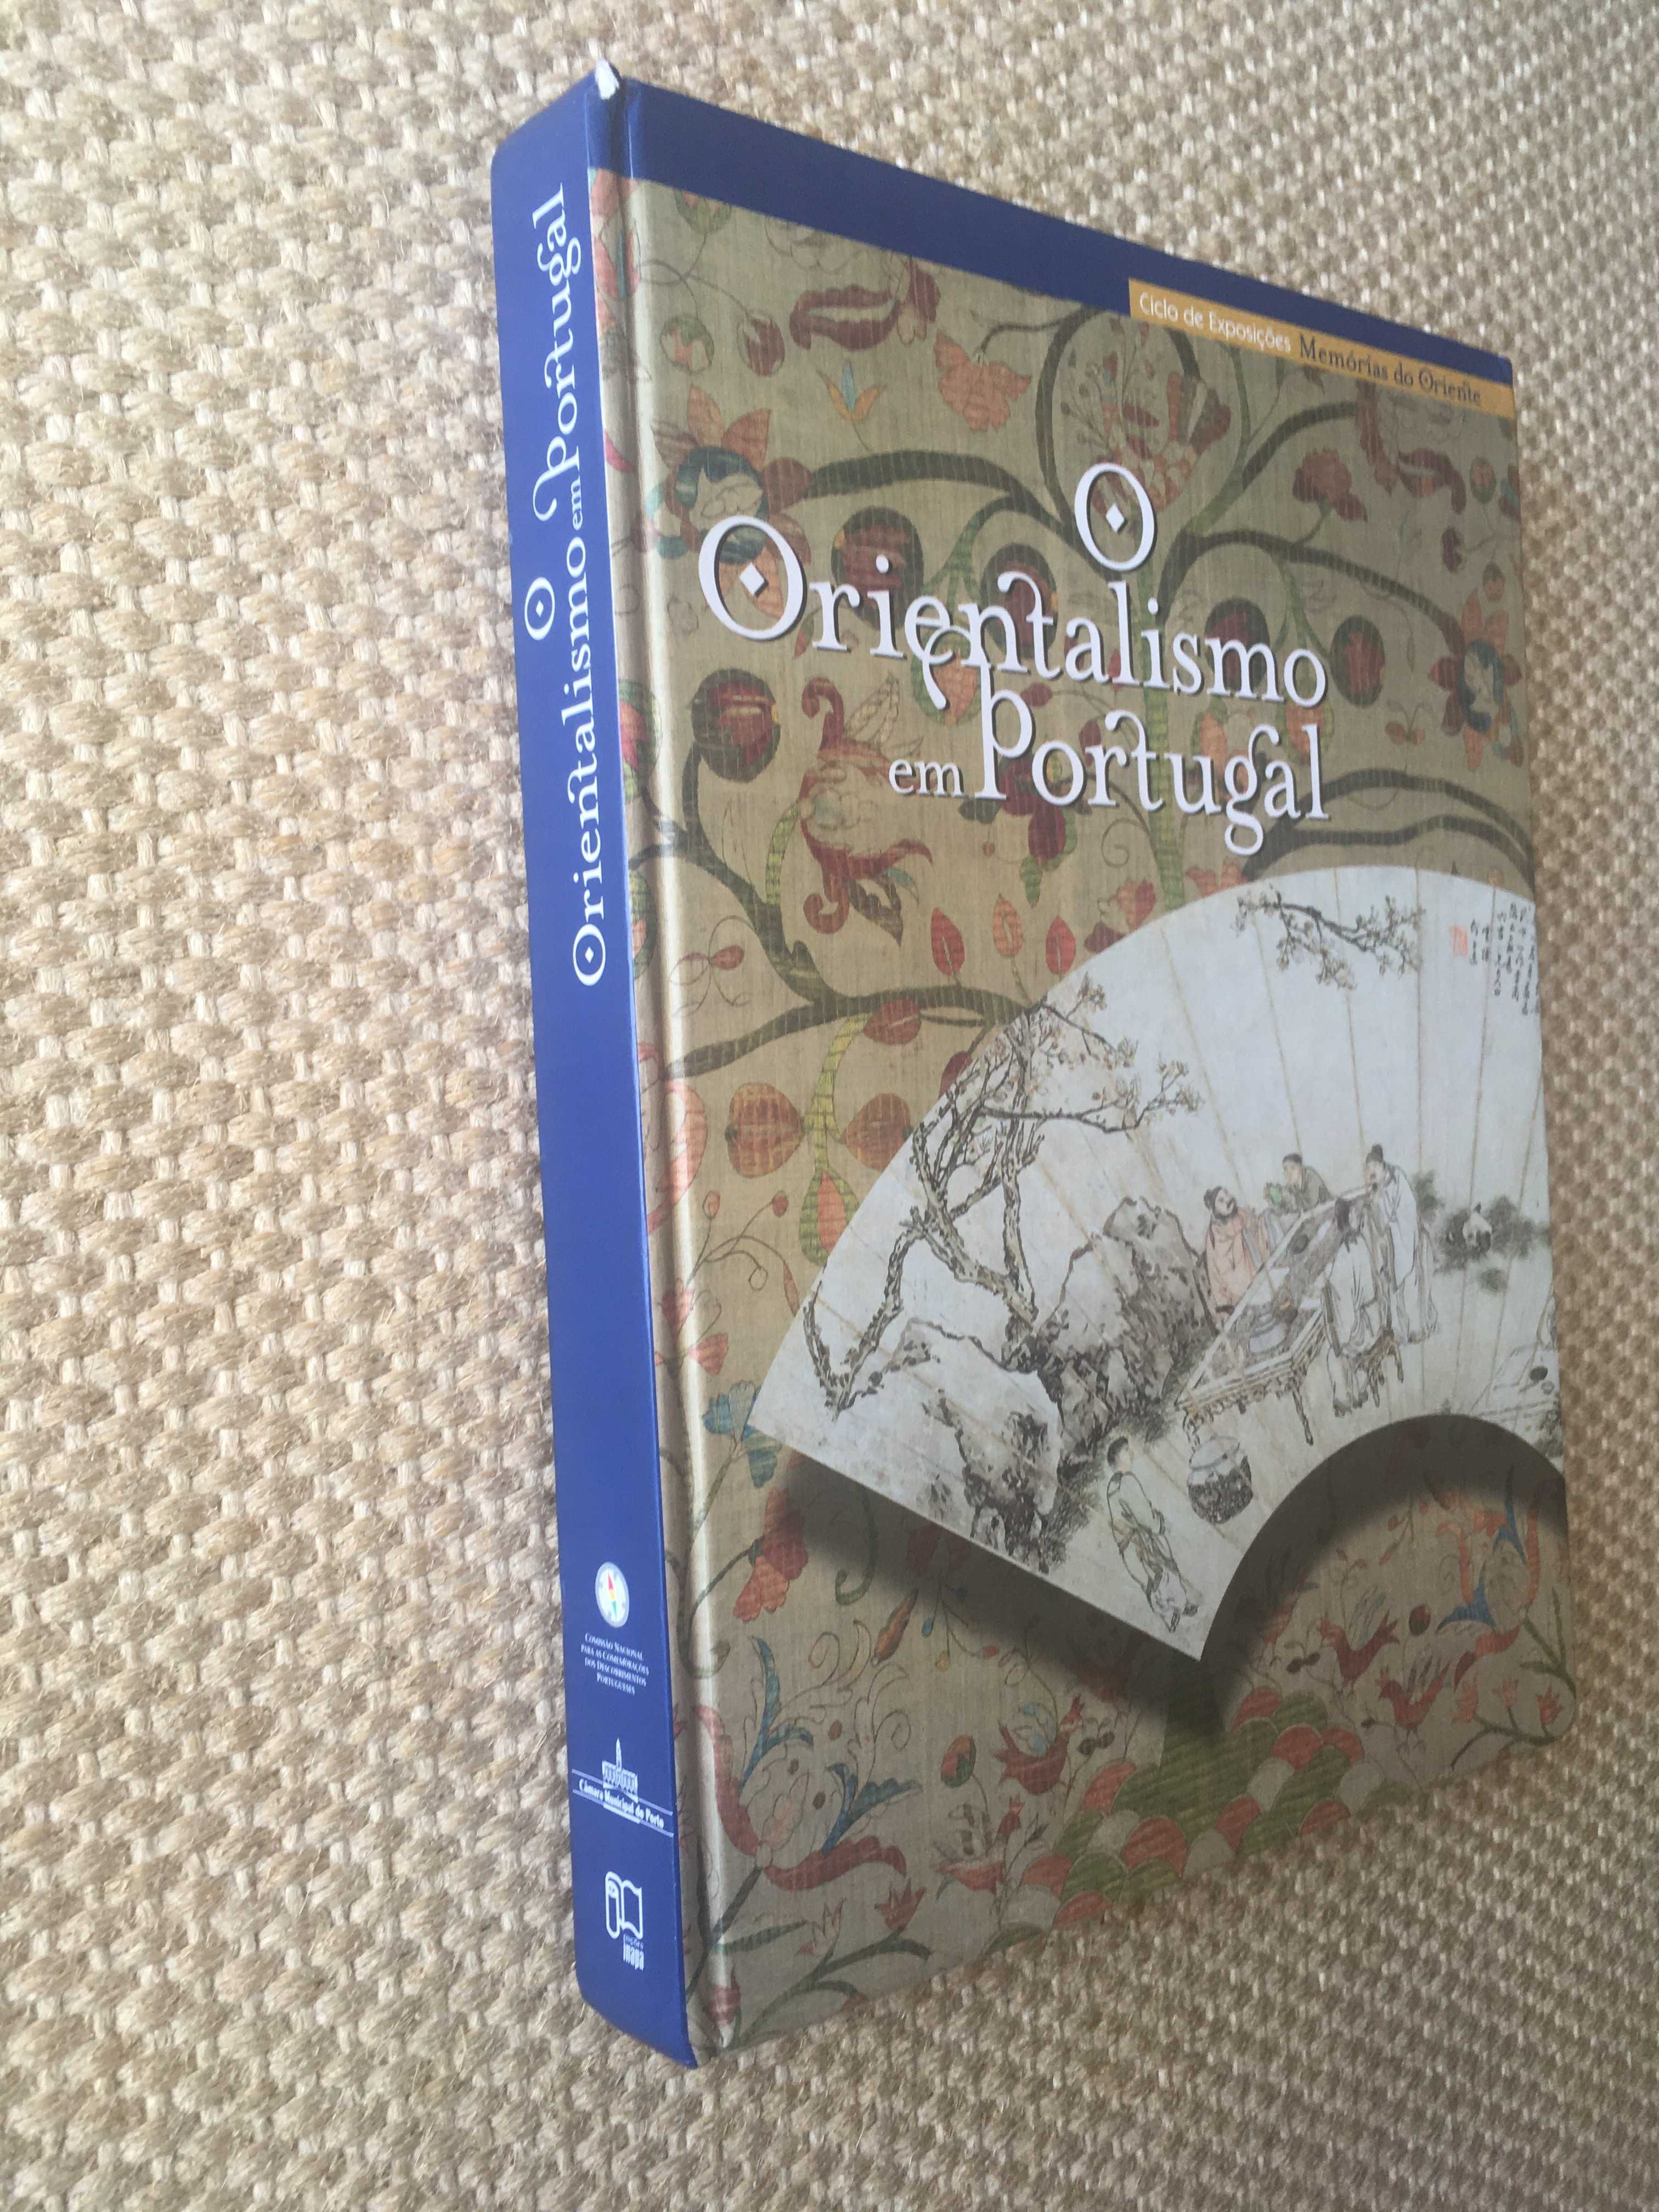 O Orientalismo em Portugal,como novo